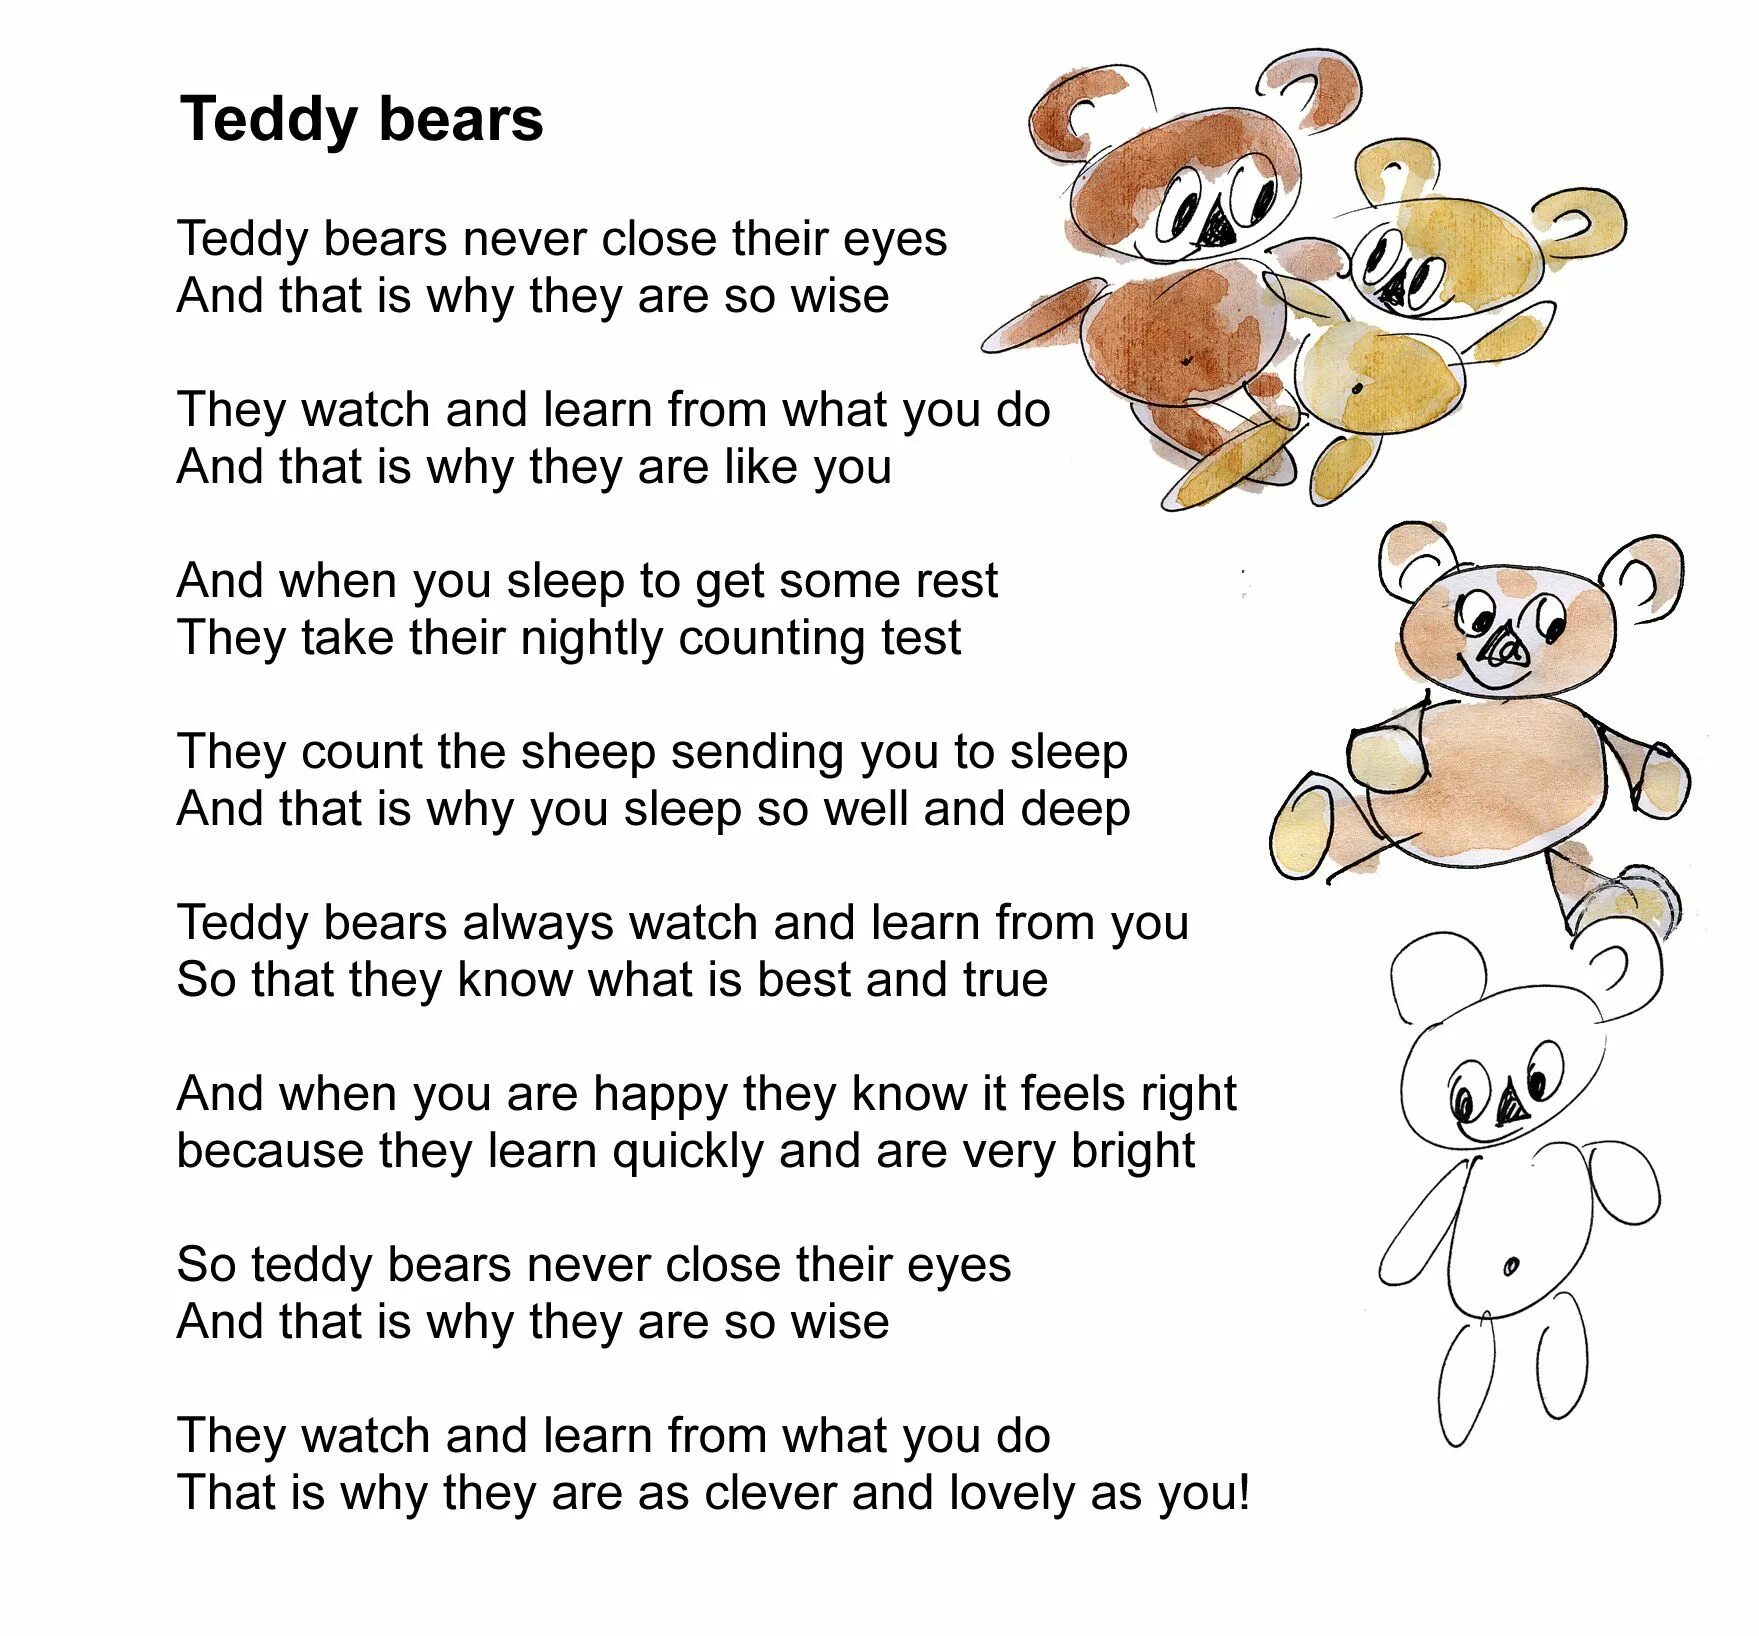 My Teddy Bear стих. Стих на английском my Teddy Bear. Стихотворение про медвежонка Тедди на английском языке. Teddy на английском языке. Текст тедди